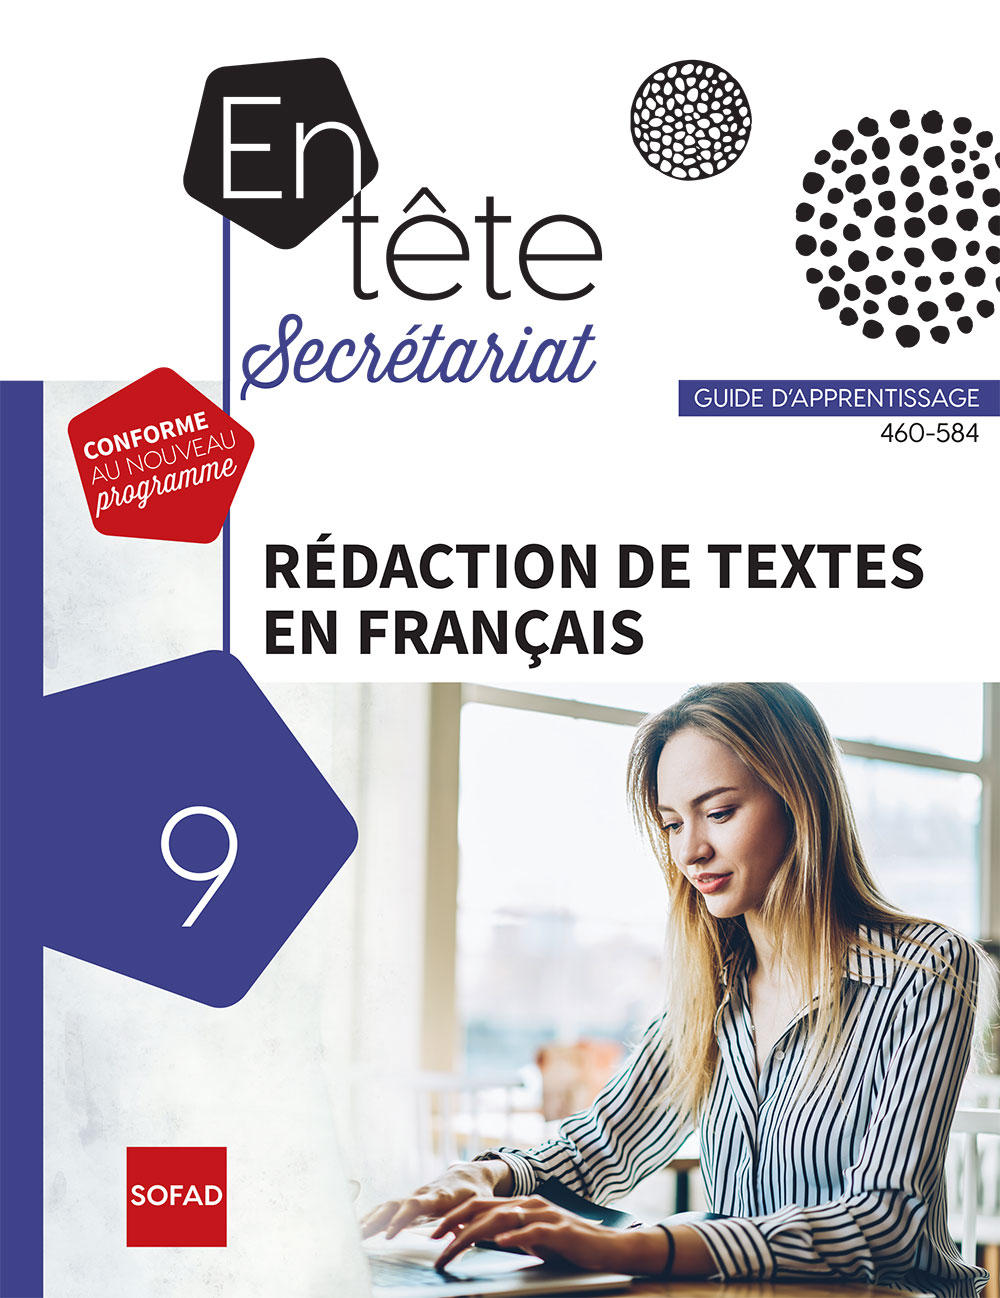 Rédaction de textes en français - 460-584